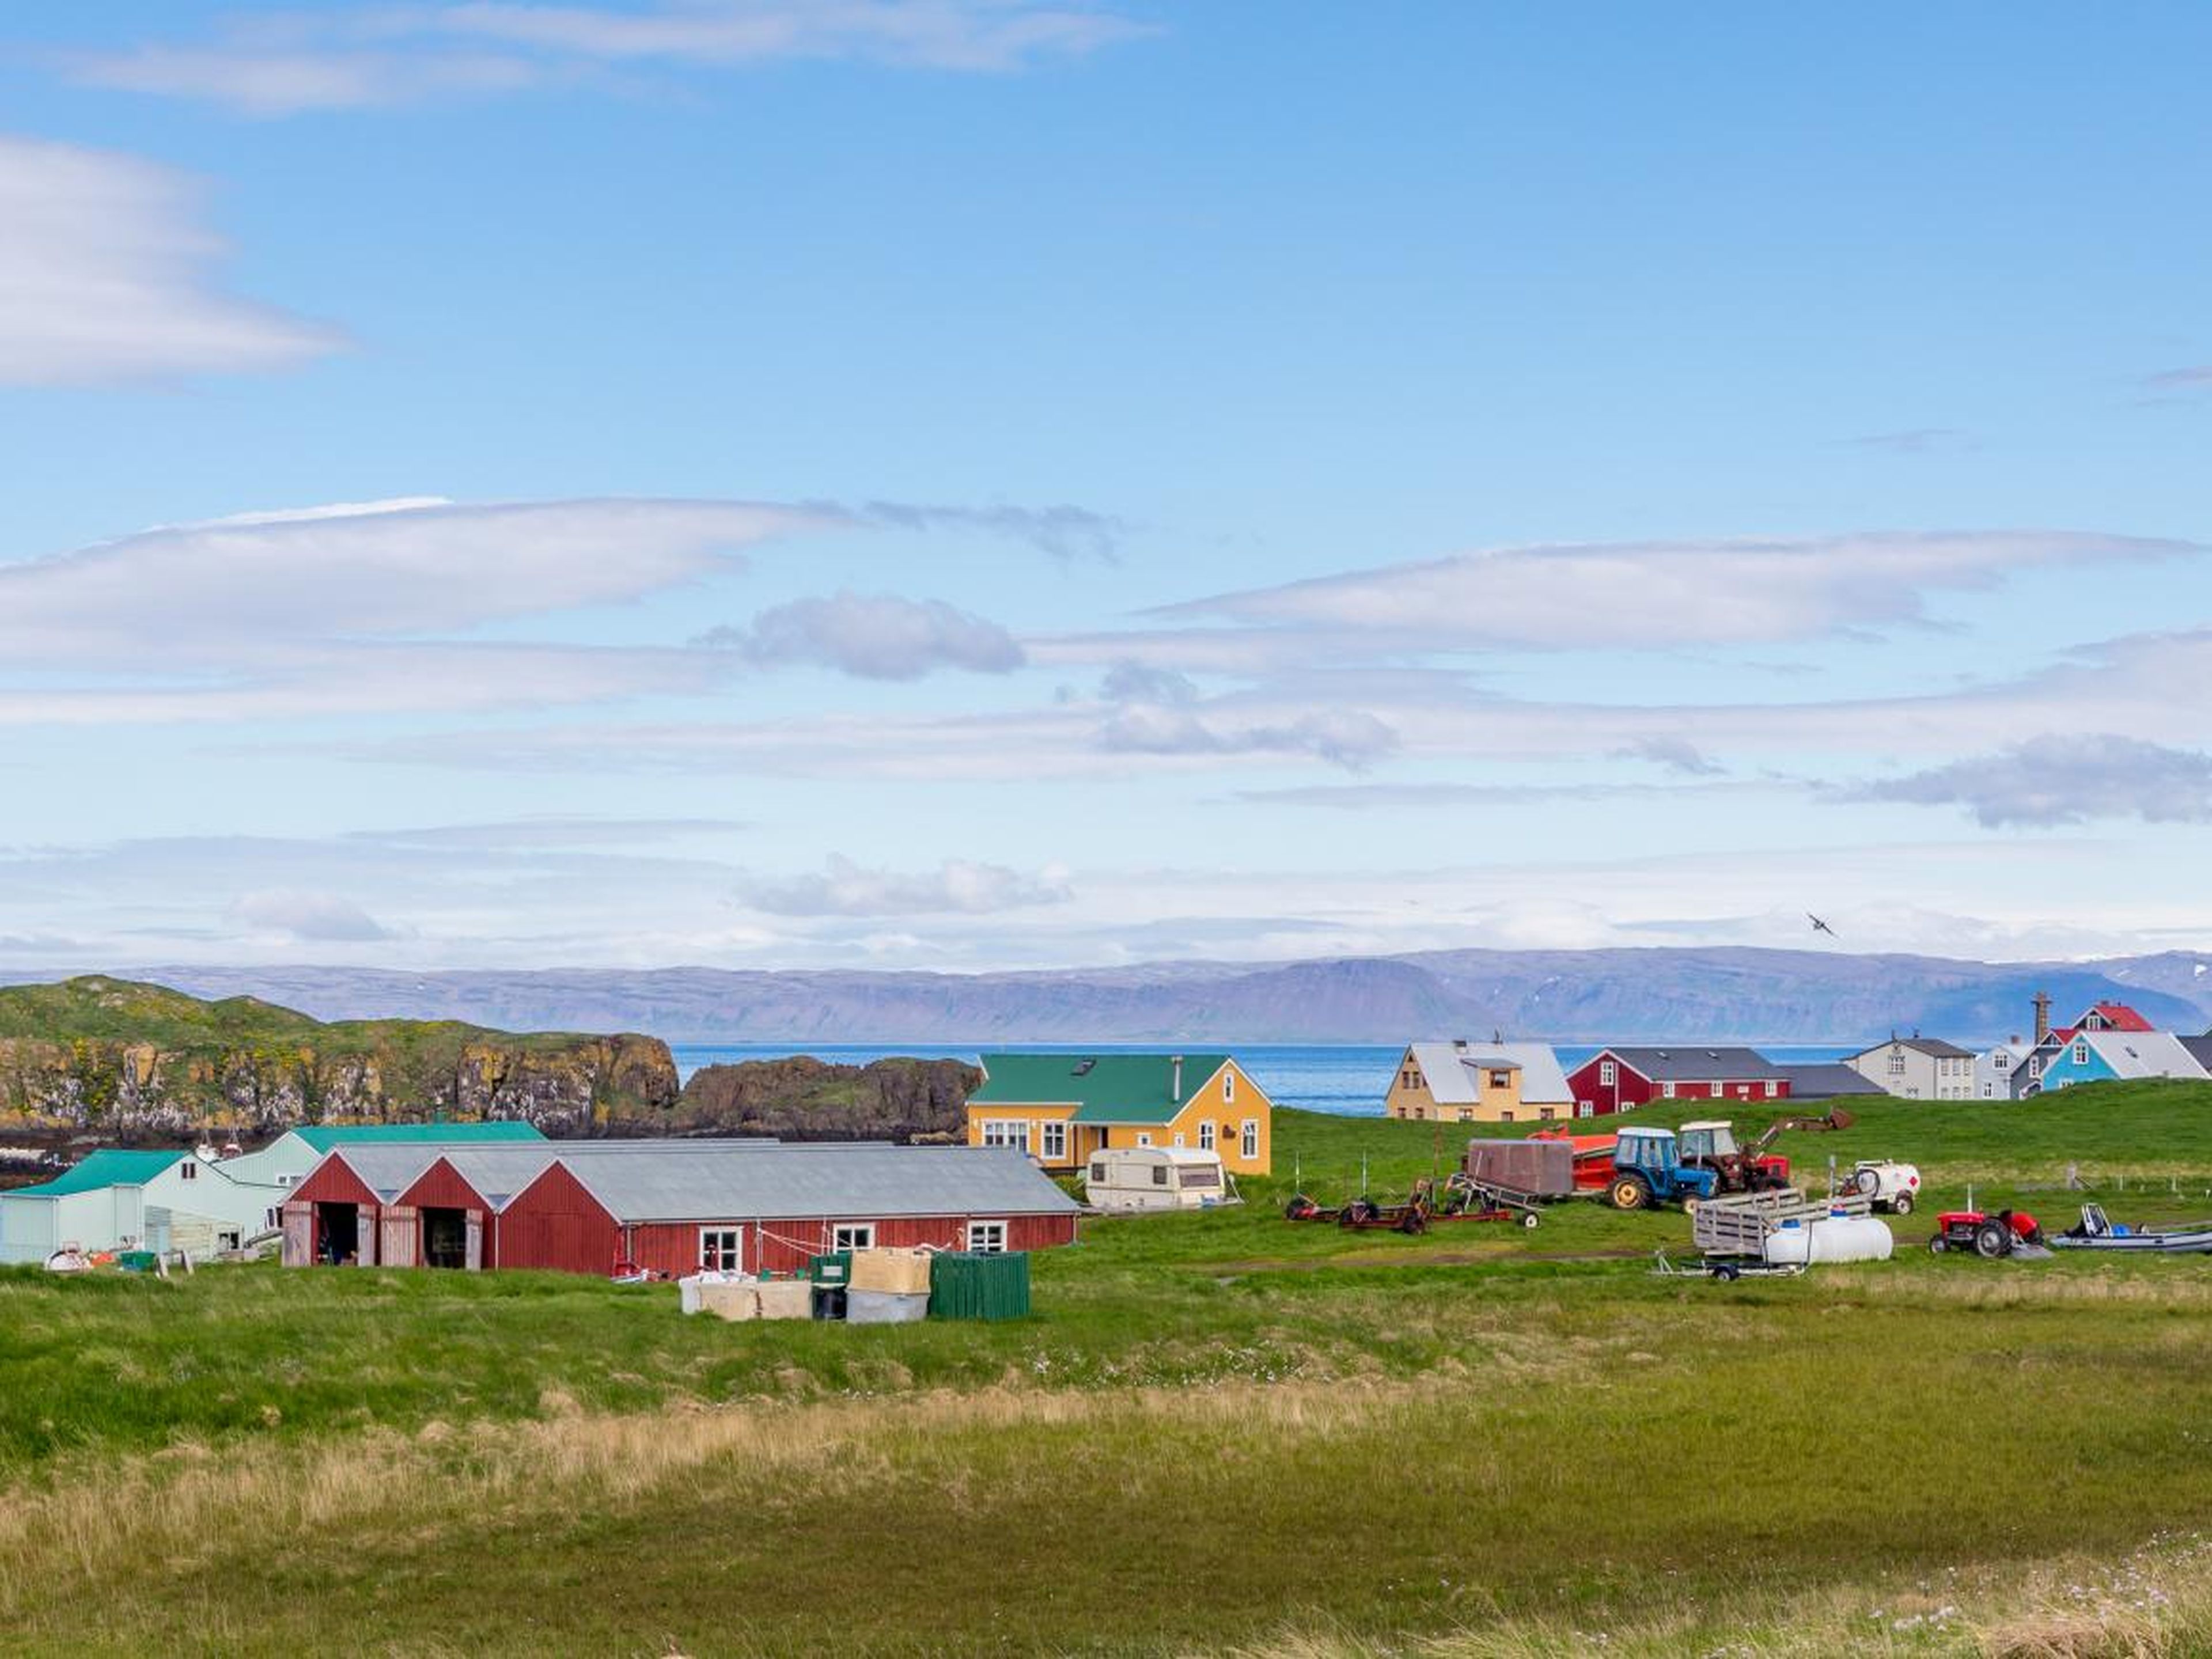 Las casas coloridas resaltan la isla.